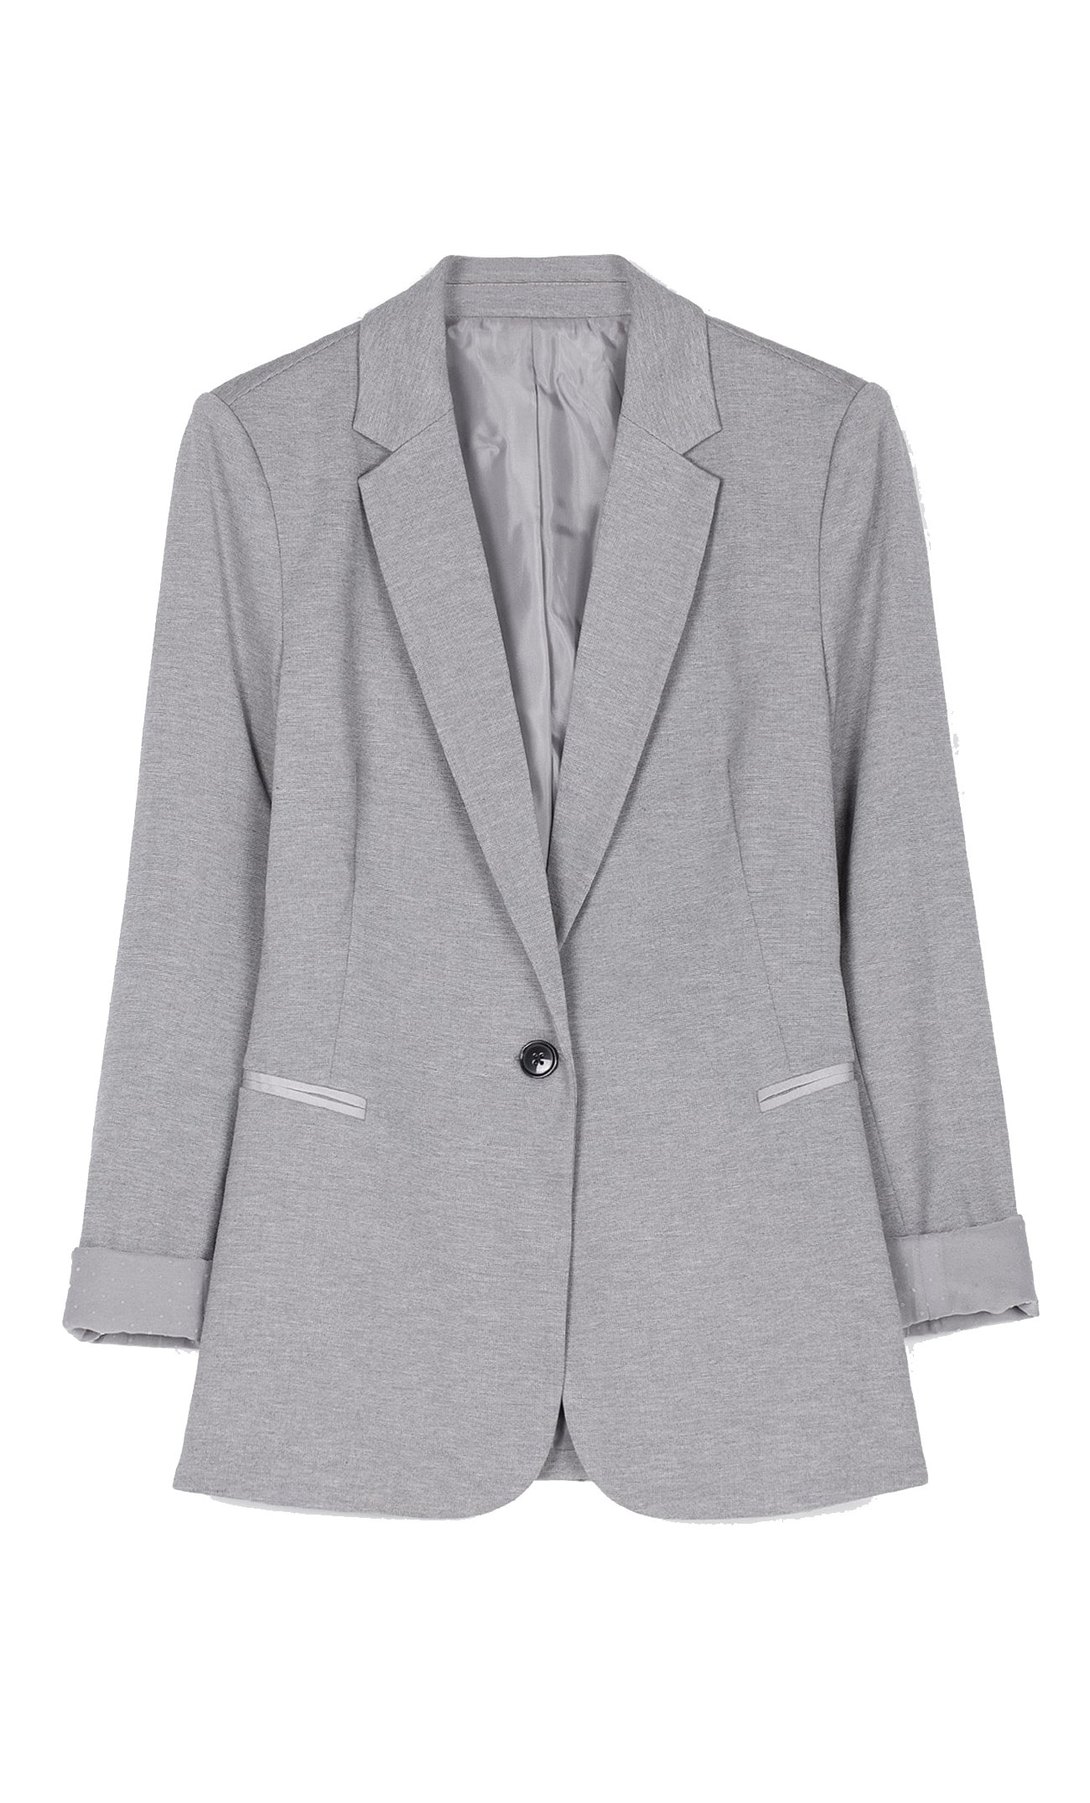 Пиджак мужского кроя. Пиджак страдивариус серый. Трикотажный серый пиджак Zara. Трикотажный пиджак женский блейзер Оджи. DKNY High Seas uc215384 пиджак женский.